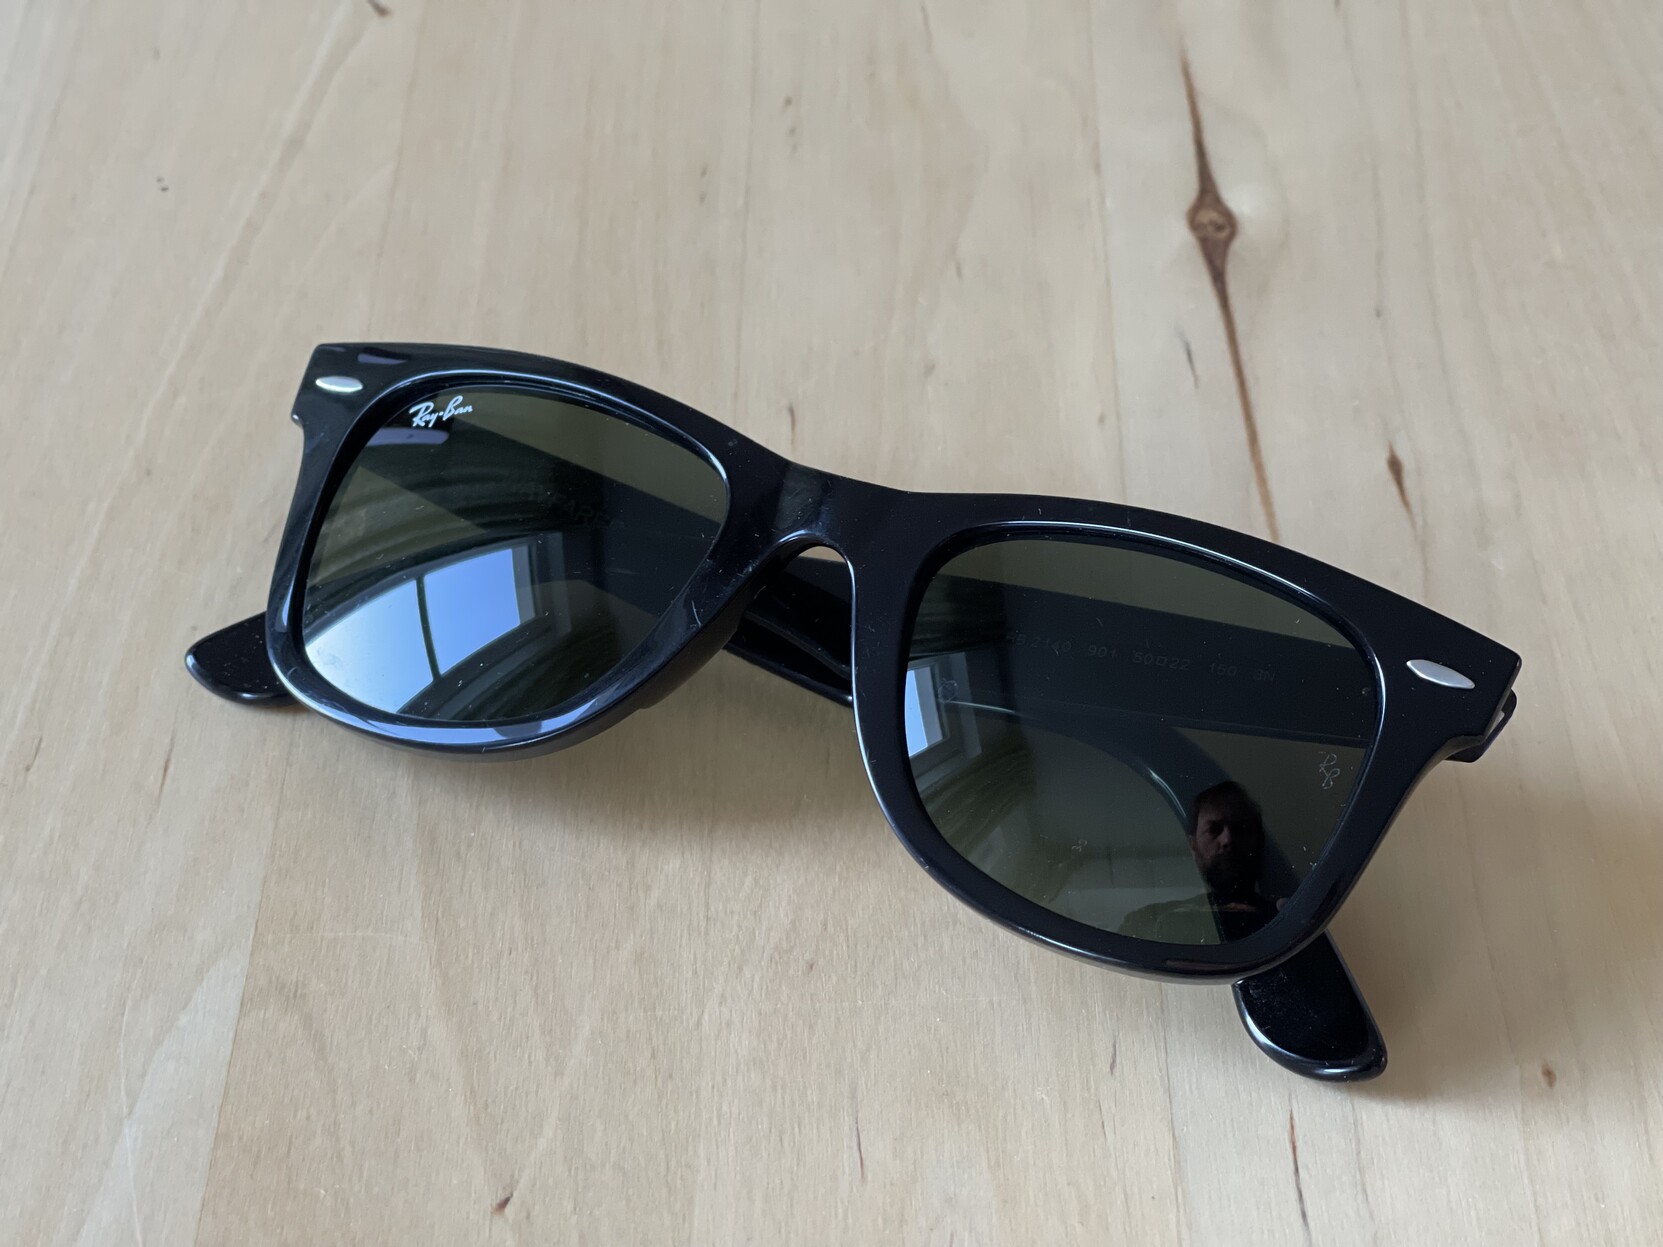 Eine Sonnenbrille: Ray Ban New Wayfarer in schwarz. Liegt auf einem Tisch aus hellem Holz. 